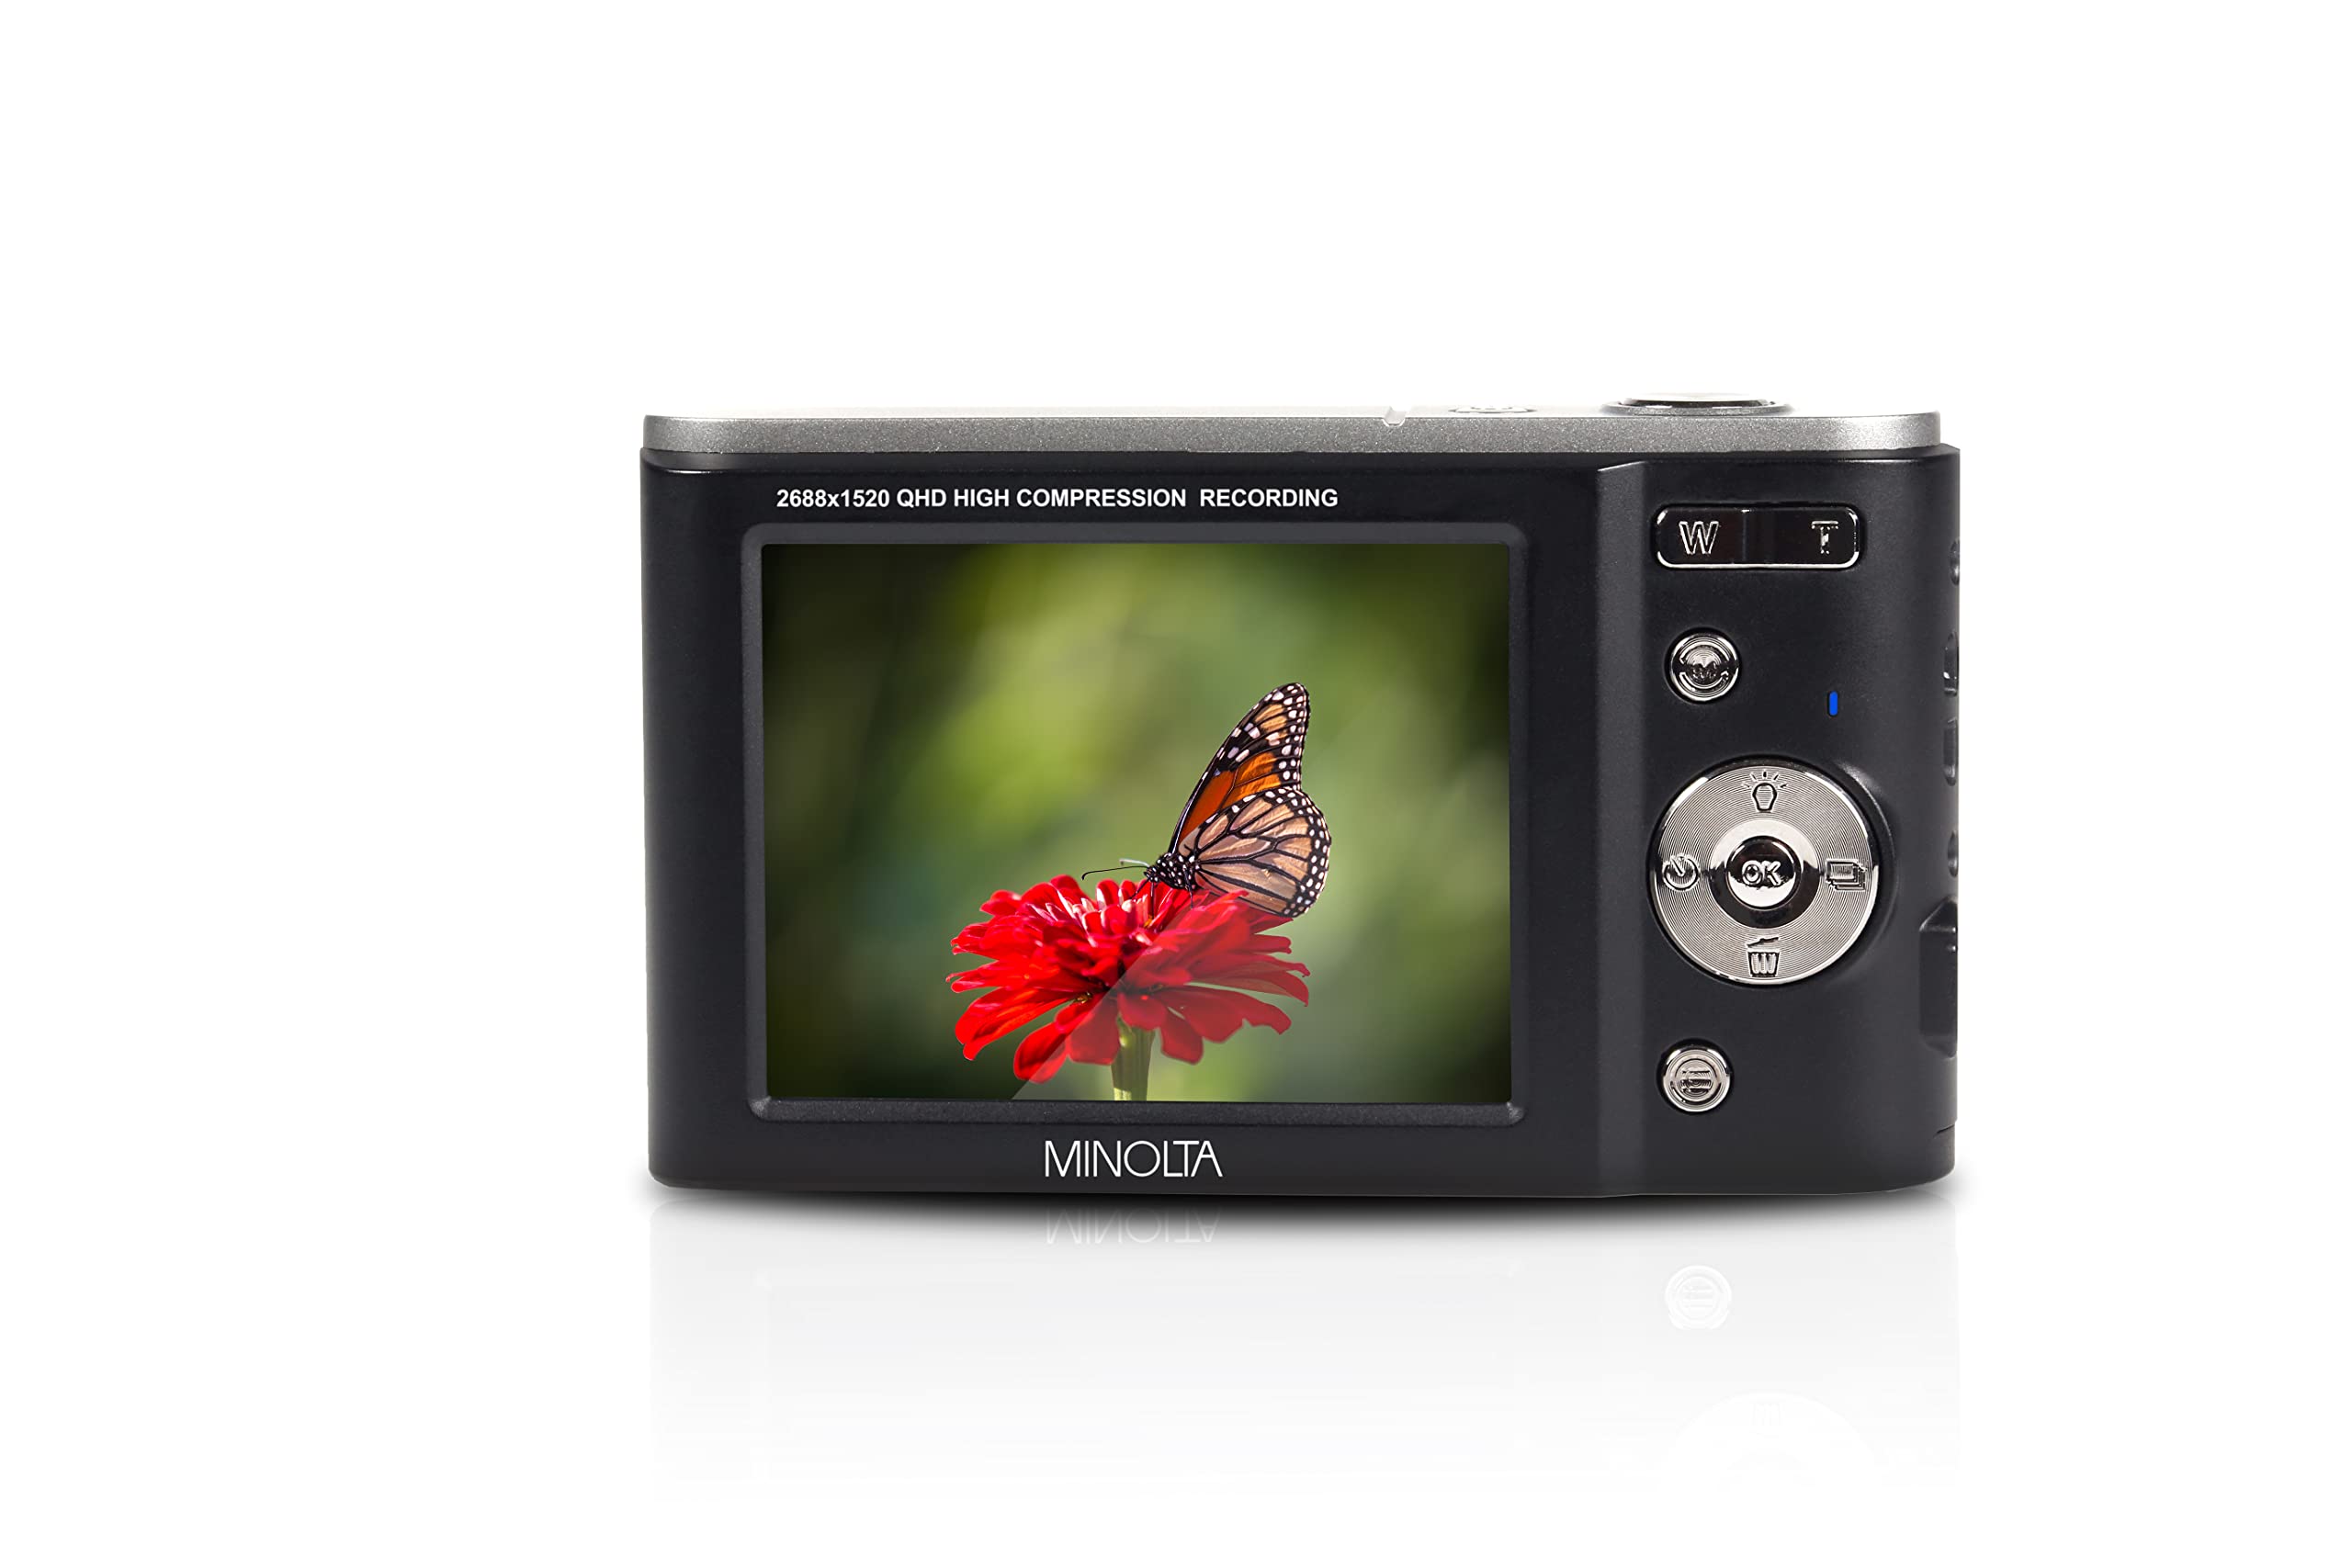 Minolta MND20 44 MP / 2.7K Ultra HD Digital Camera (Black)